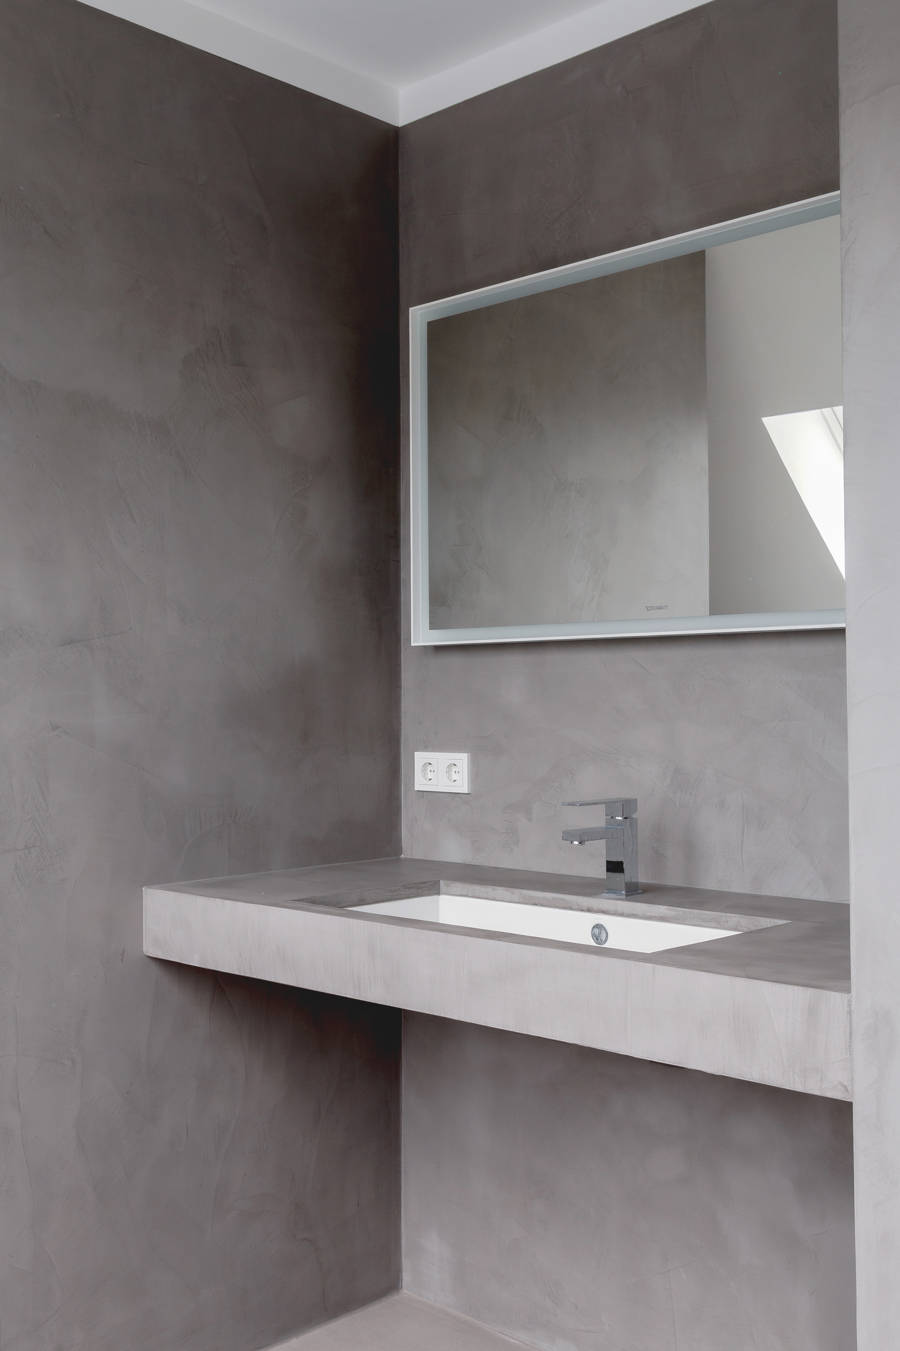 Casa de banho com microcimento de cor cinza nas paredes, no chão e na bancada.